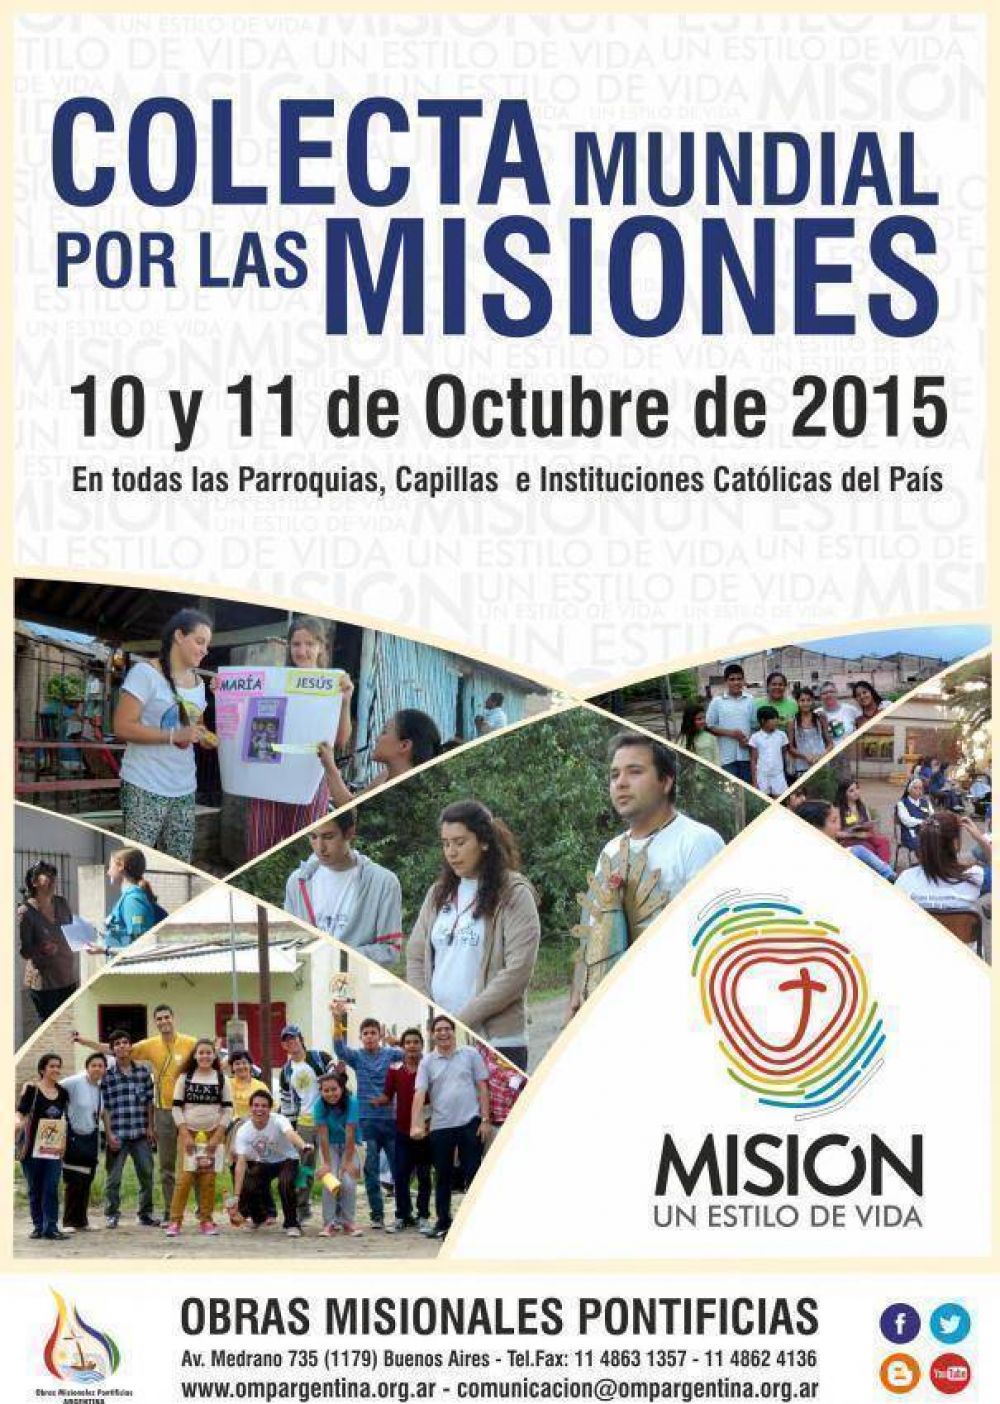 “Misión, un estilo de vida”, el lema de la Colecta Mundial por las Misiones